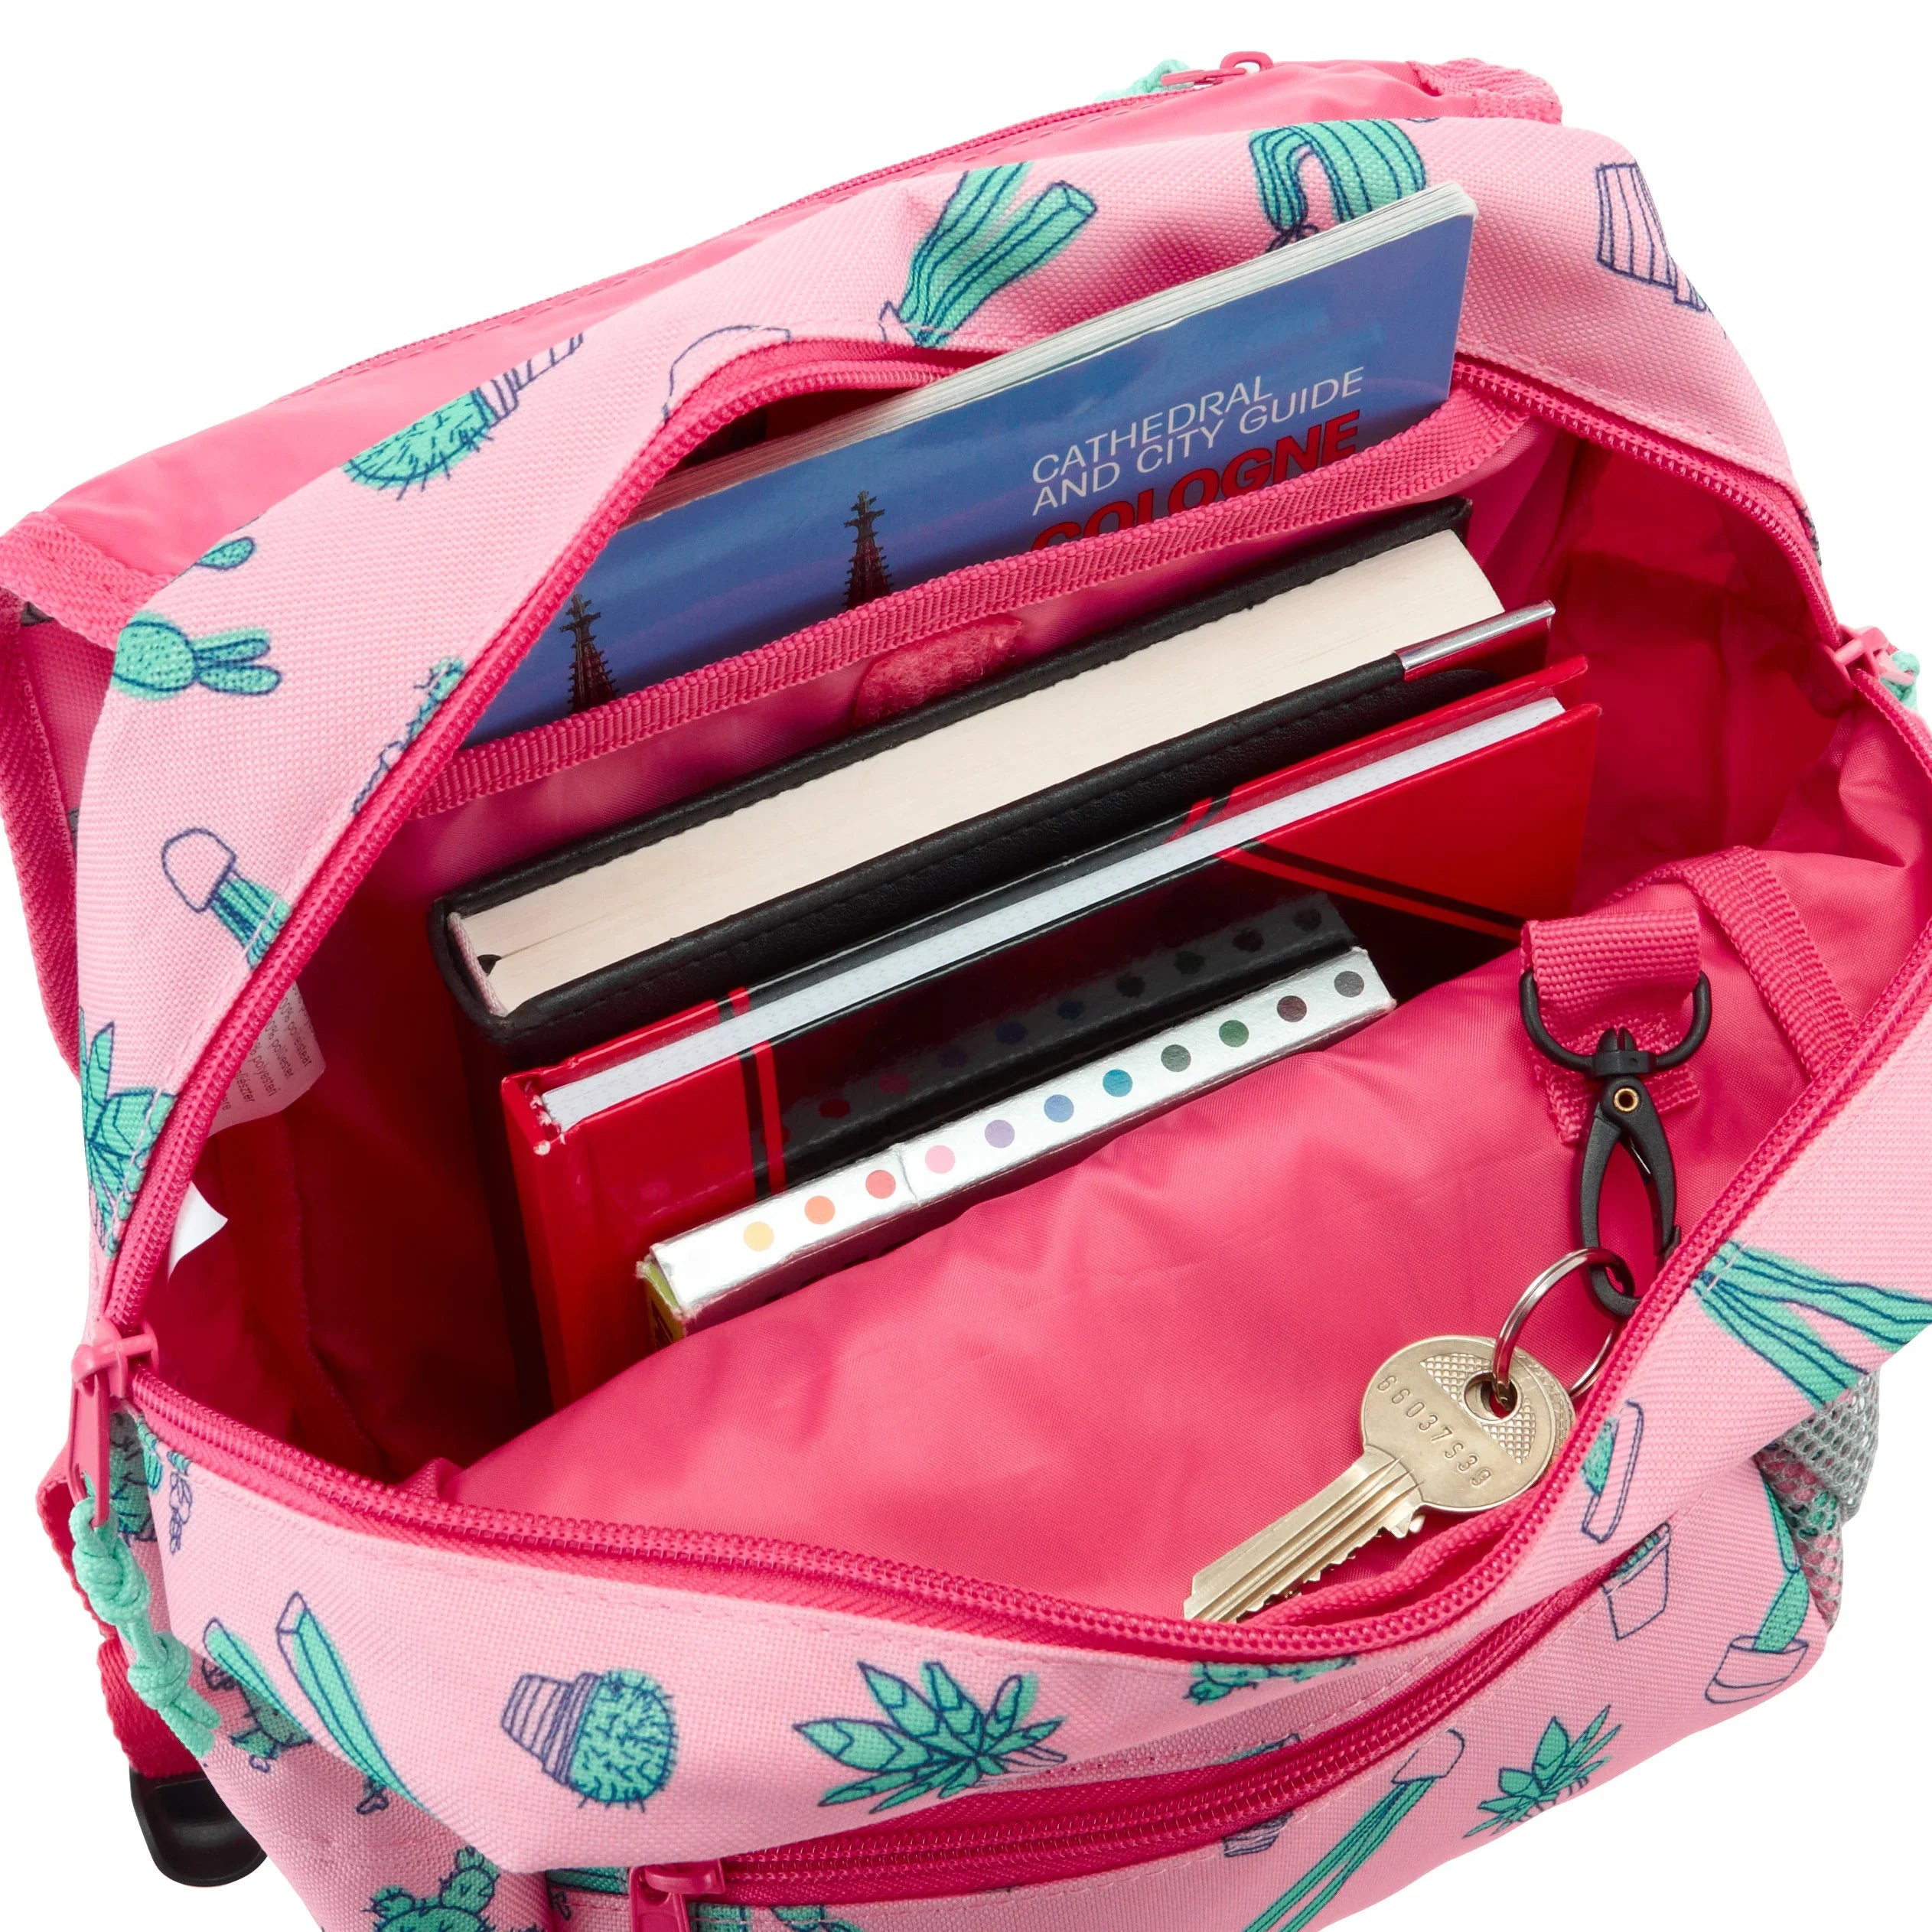 Reisenthel Kids Backpack Rucksack 28 cm - friends pink